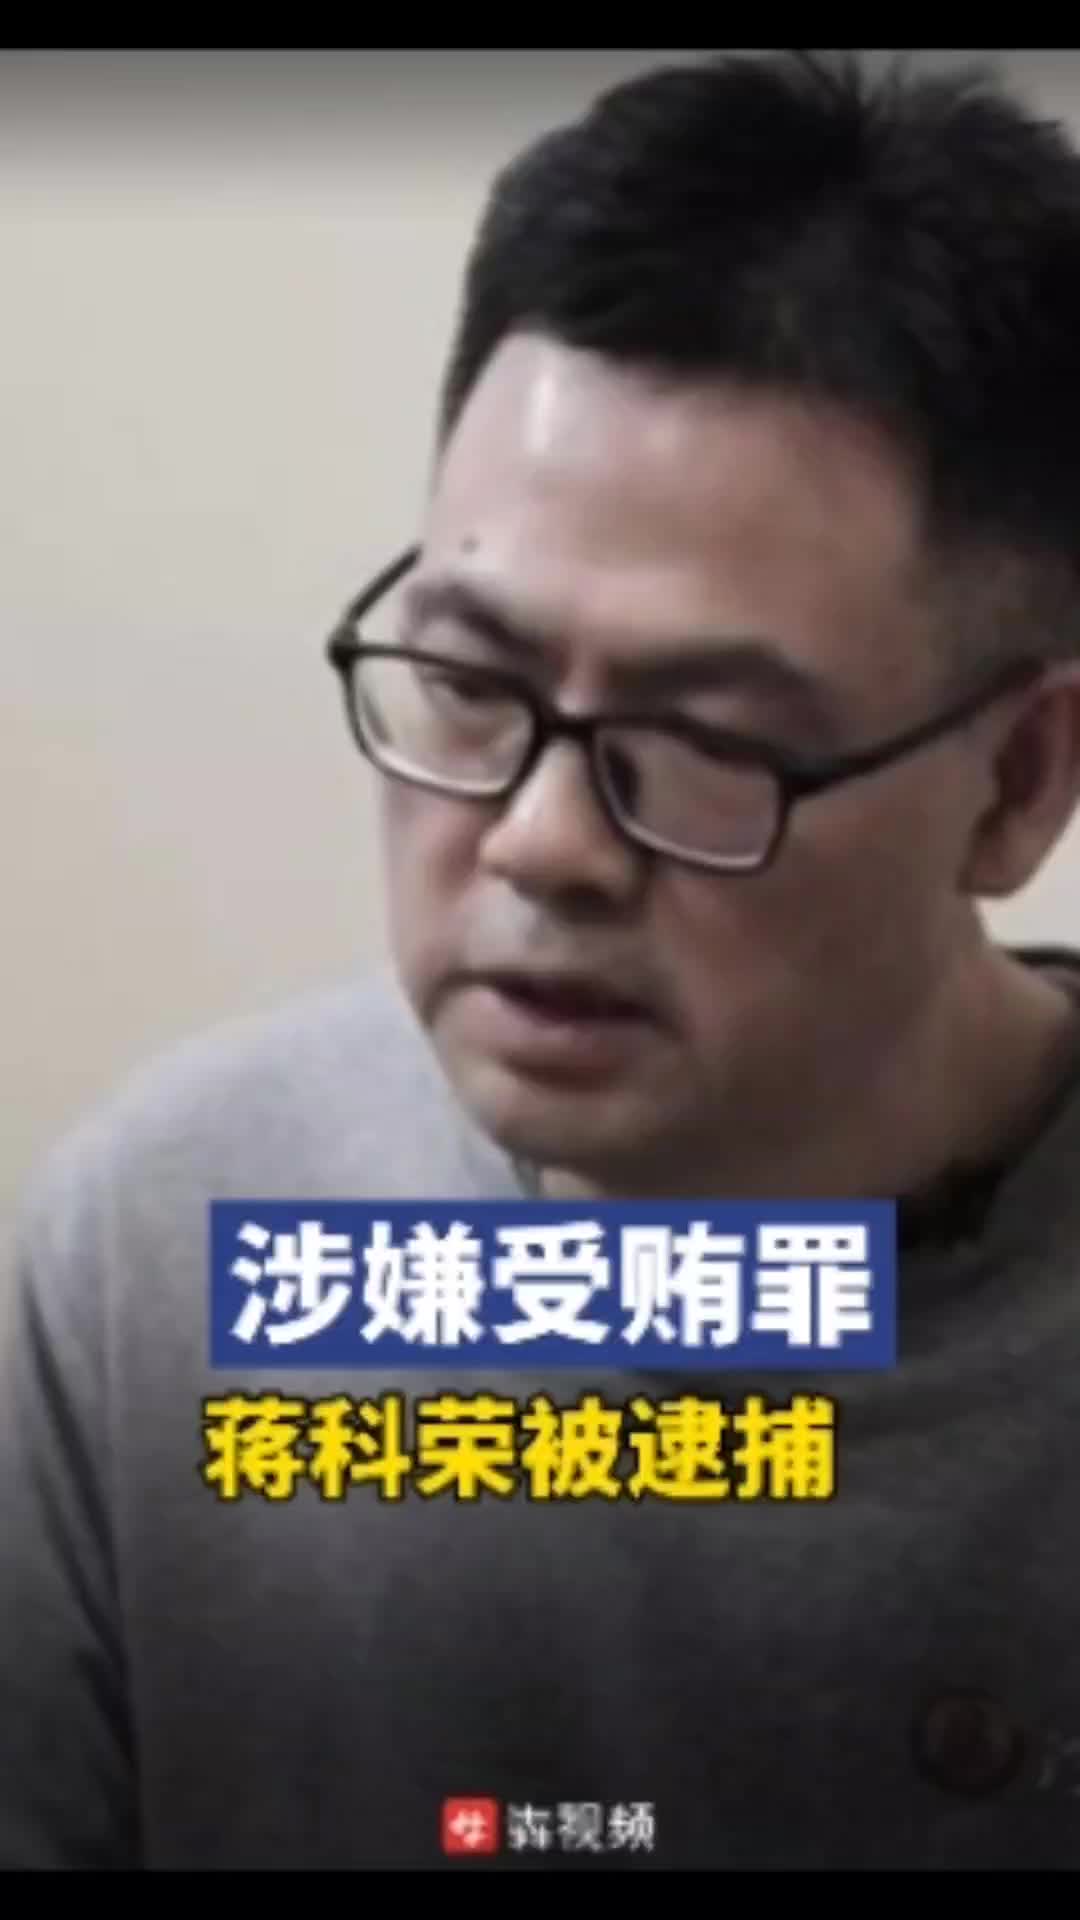 邵阳市政协原副主席蒋科荣涉嫌受贿罪被逮捕